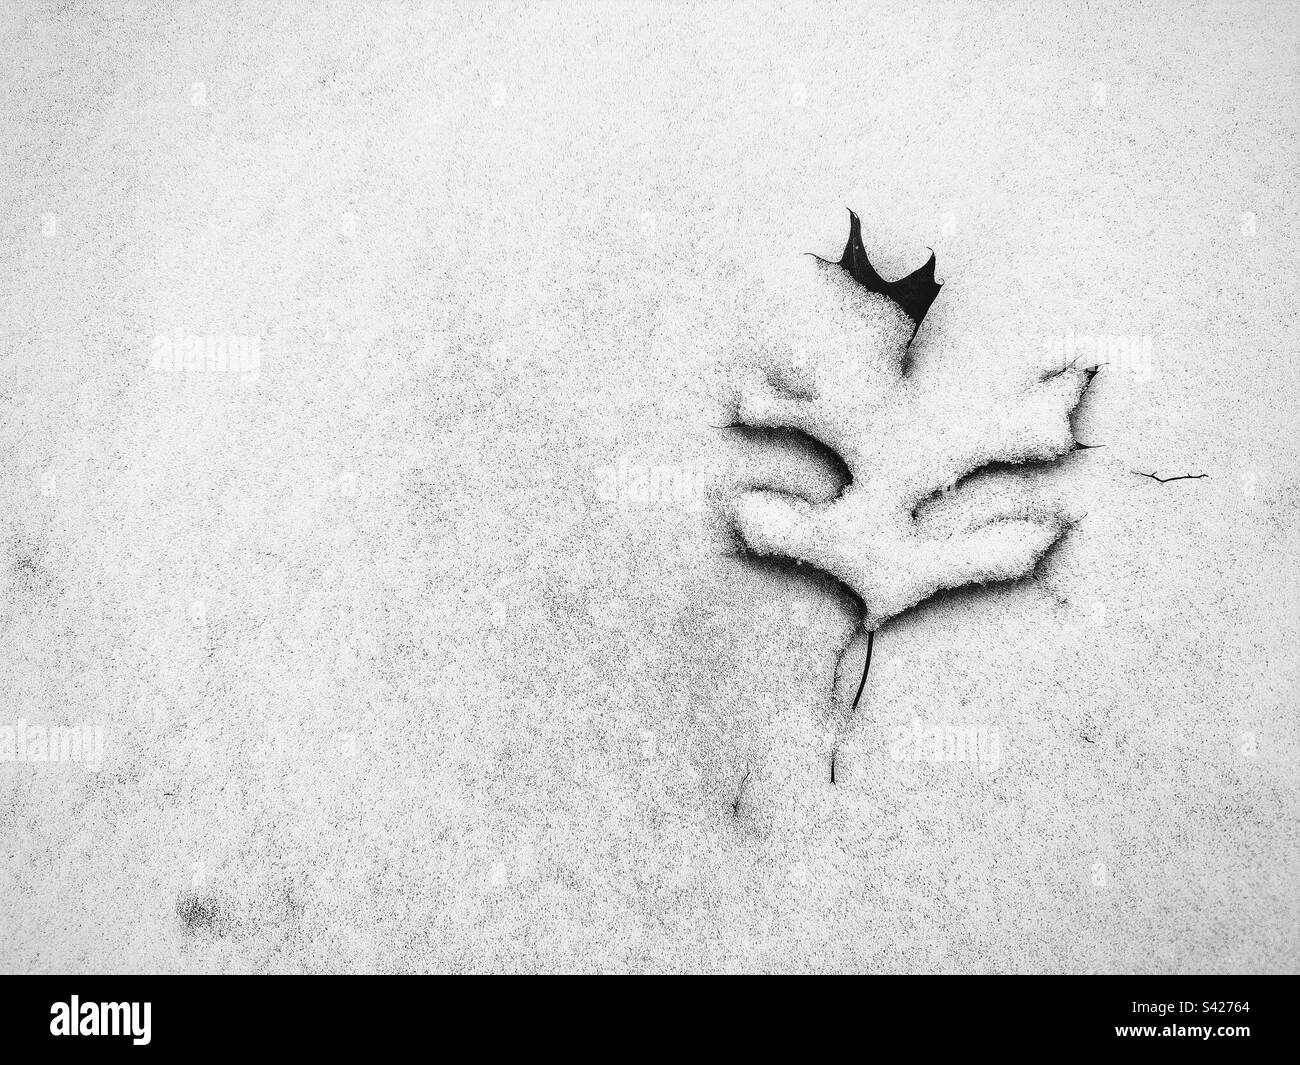 Frischer Schnee auf dem Boden, der ein Eichenblatt bedeckt. Hipstamatischer Filter. Aufgenommen in Neuengland. Stockfoto